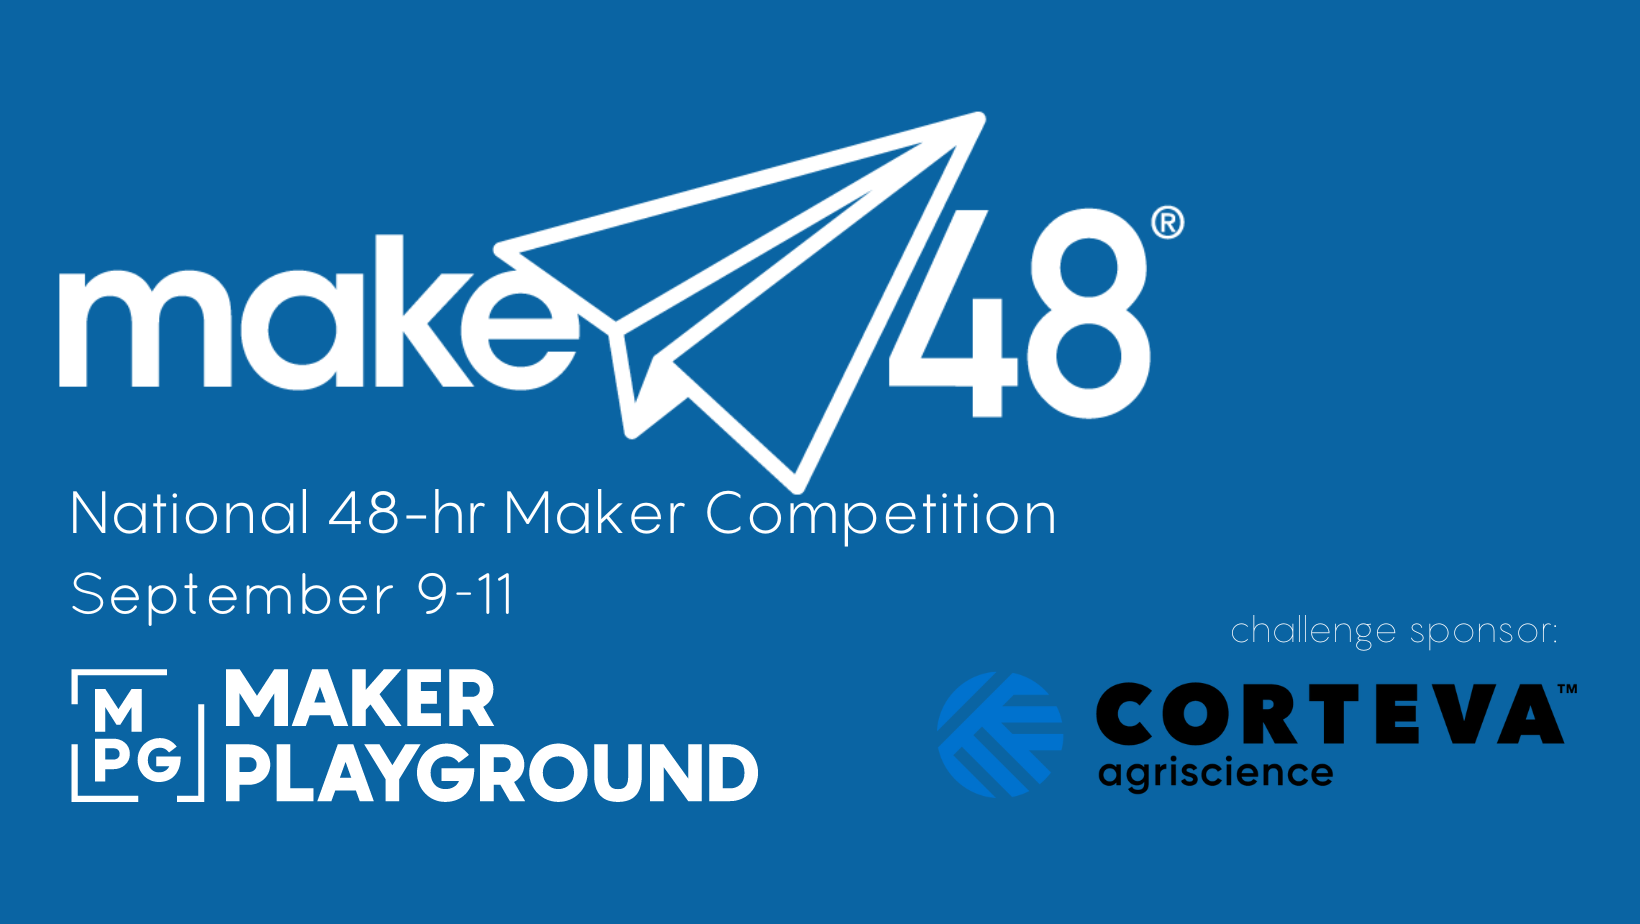 make 48 national 48-hr maker competition September 9-11